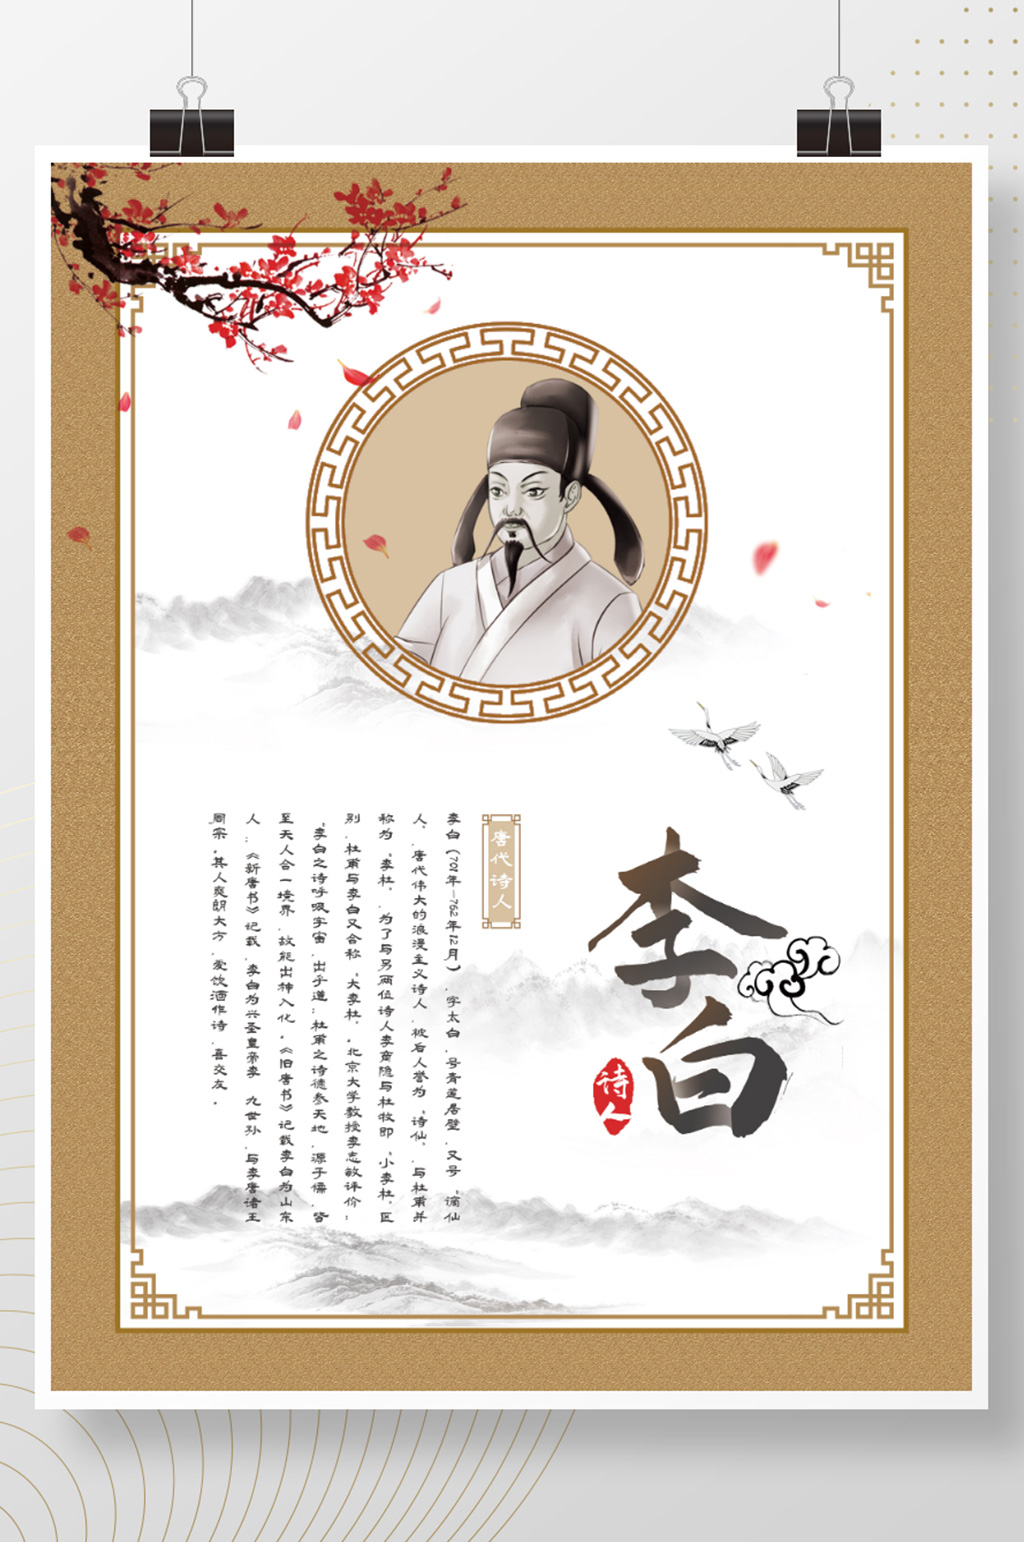 众图网独家提供中国风复古名人简介人物介绍海报素材免费下载,本作品